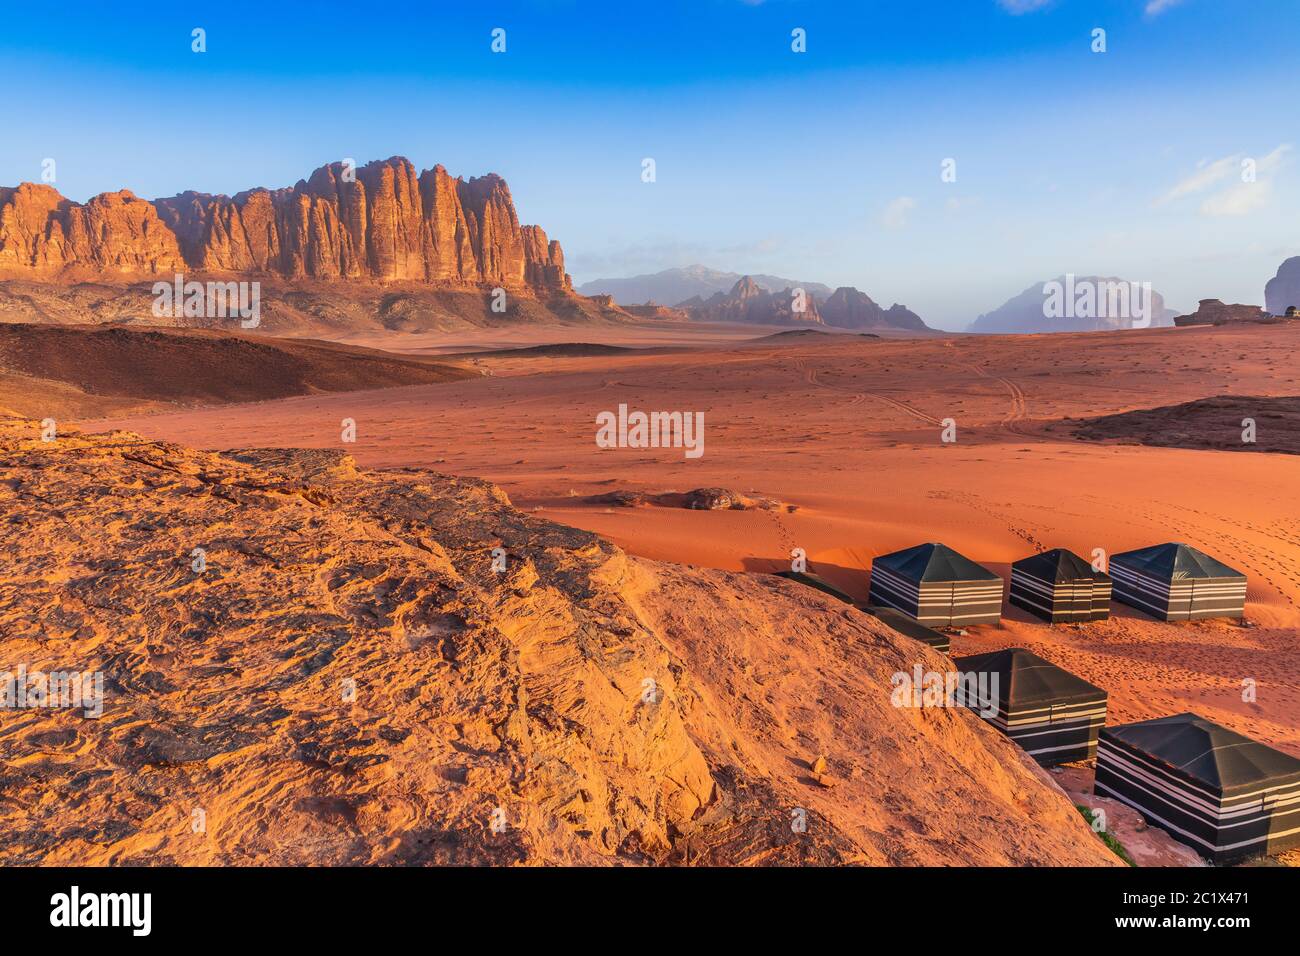 Wadi Rum Desert, Jordan. The red desert and bedouin camp. Stock Photo